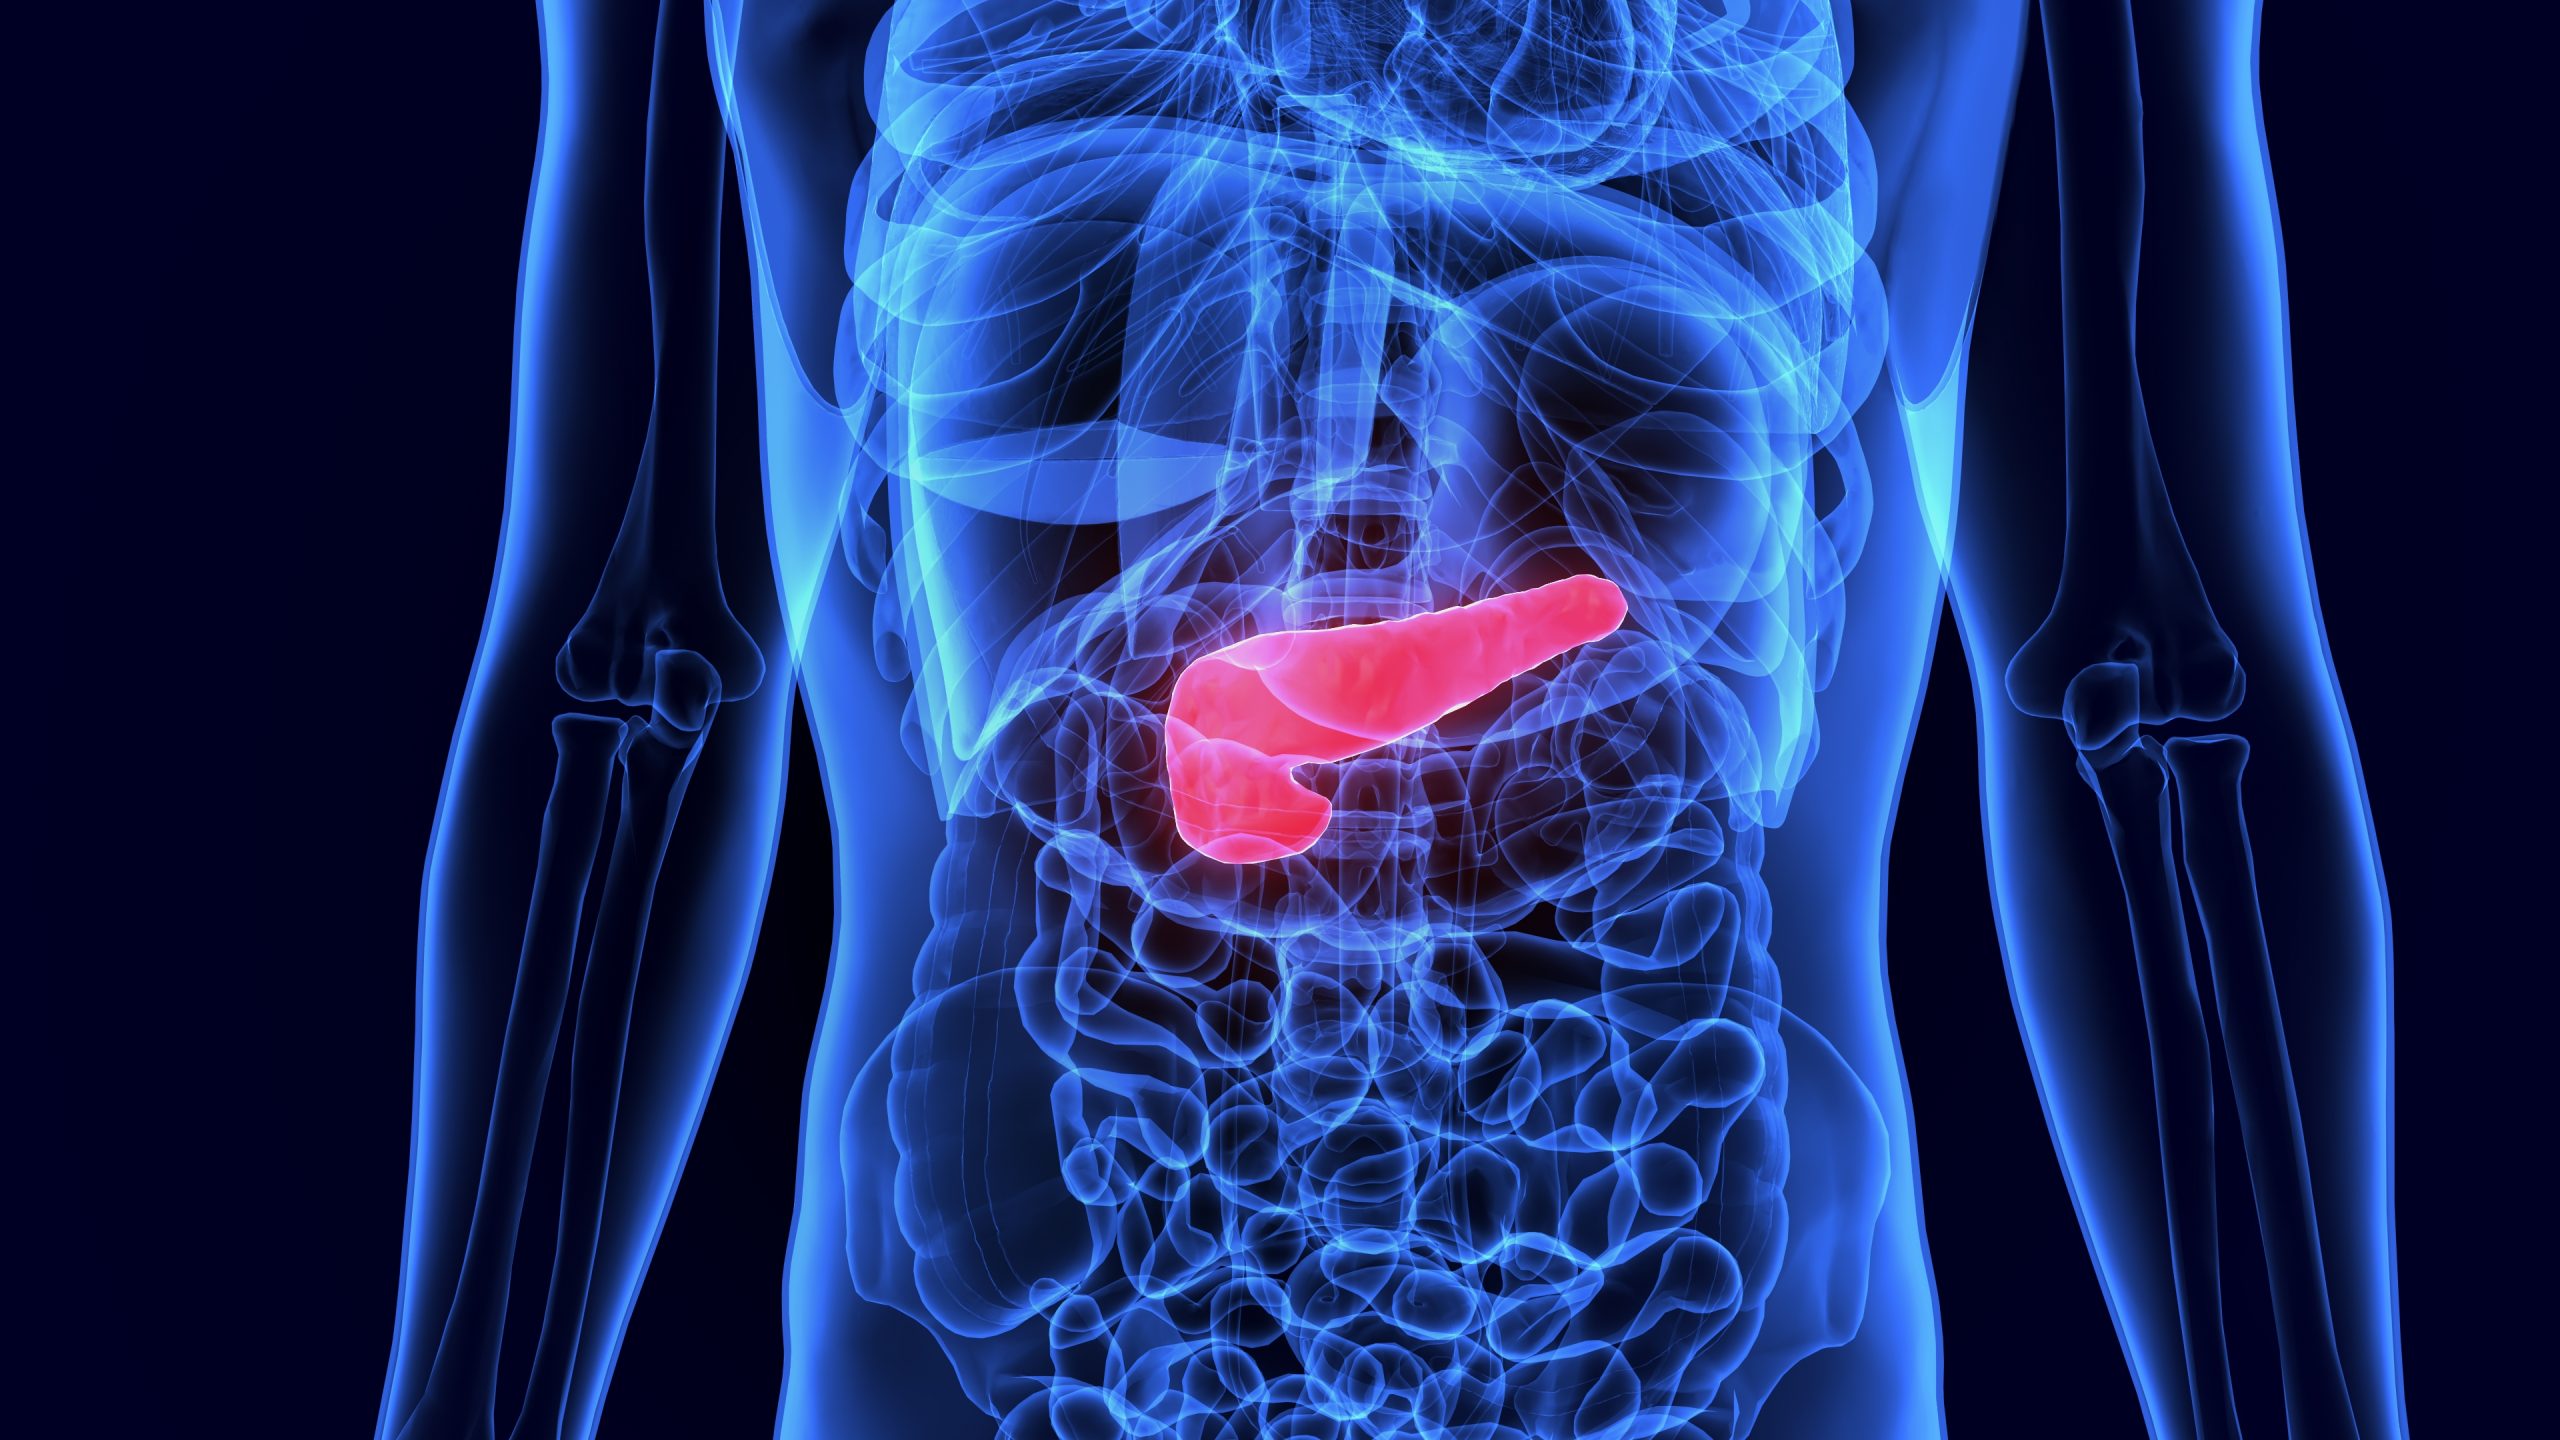 Manifestações clínicas diagnóstico e manejo da pancreatite aguda CUREM